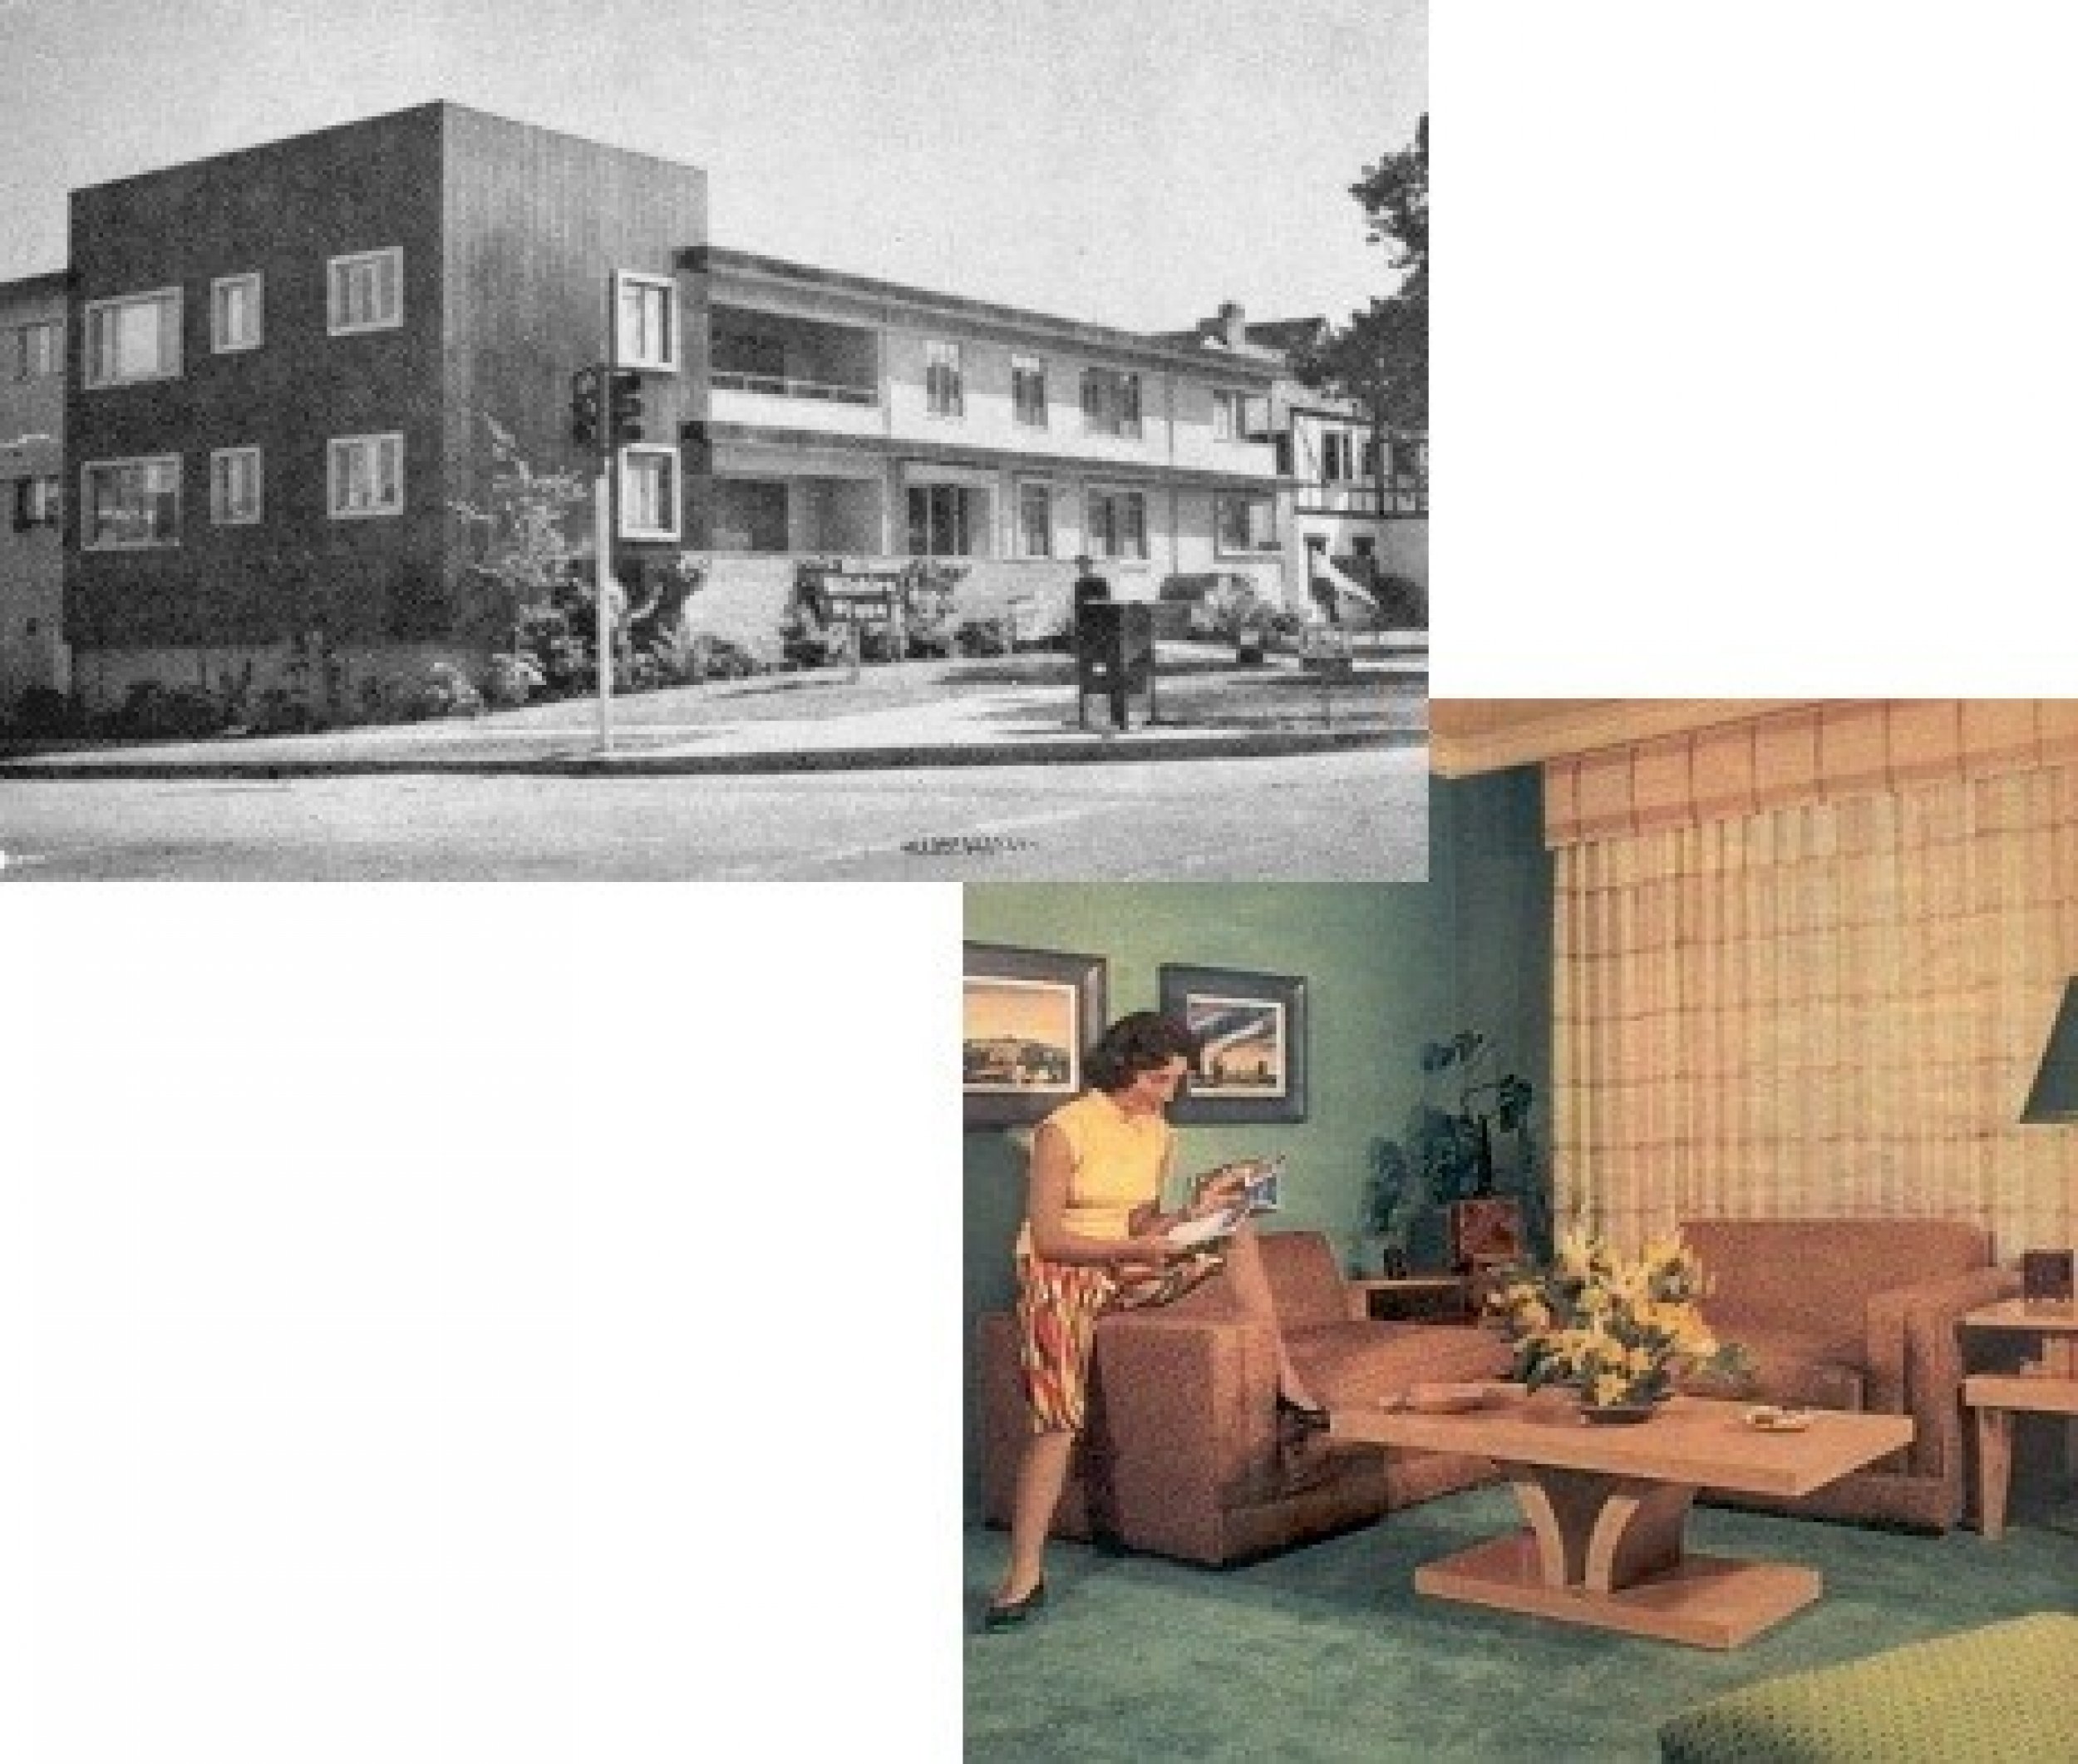 1060 Wilshire Boulevard, Westwood February 1951-July 1954